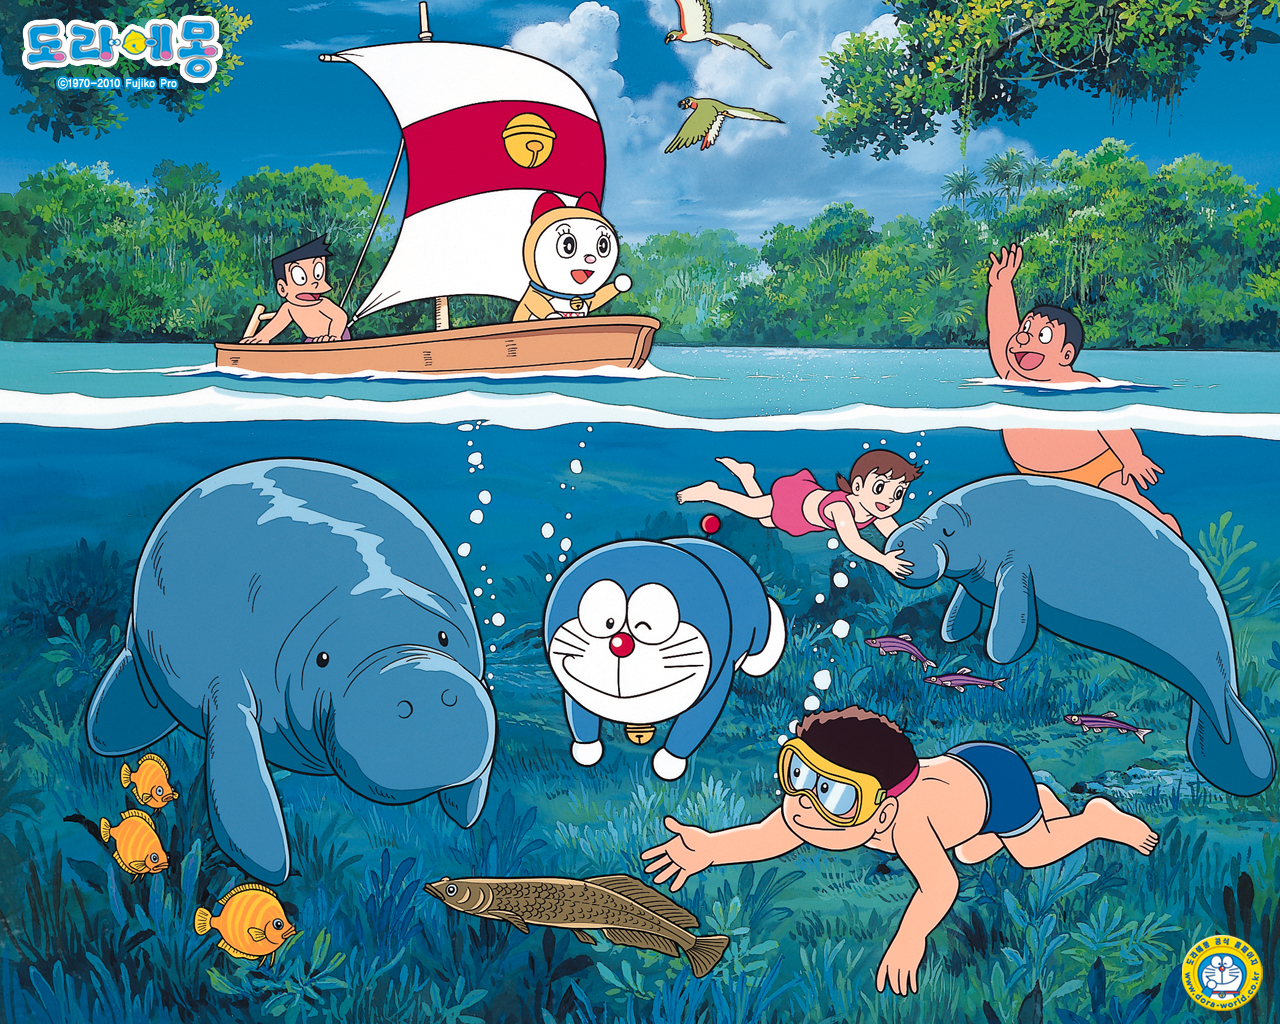 Doraemon Wallpaper for desktop devices